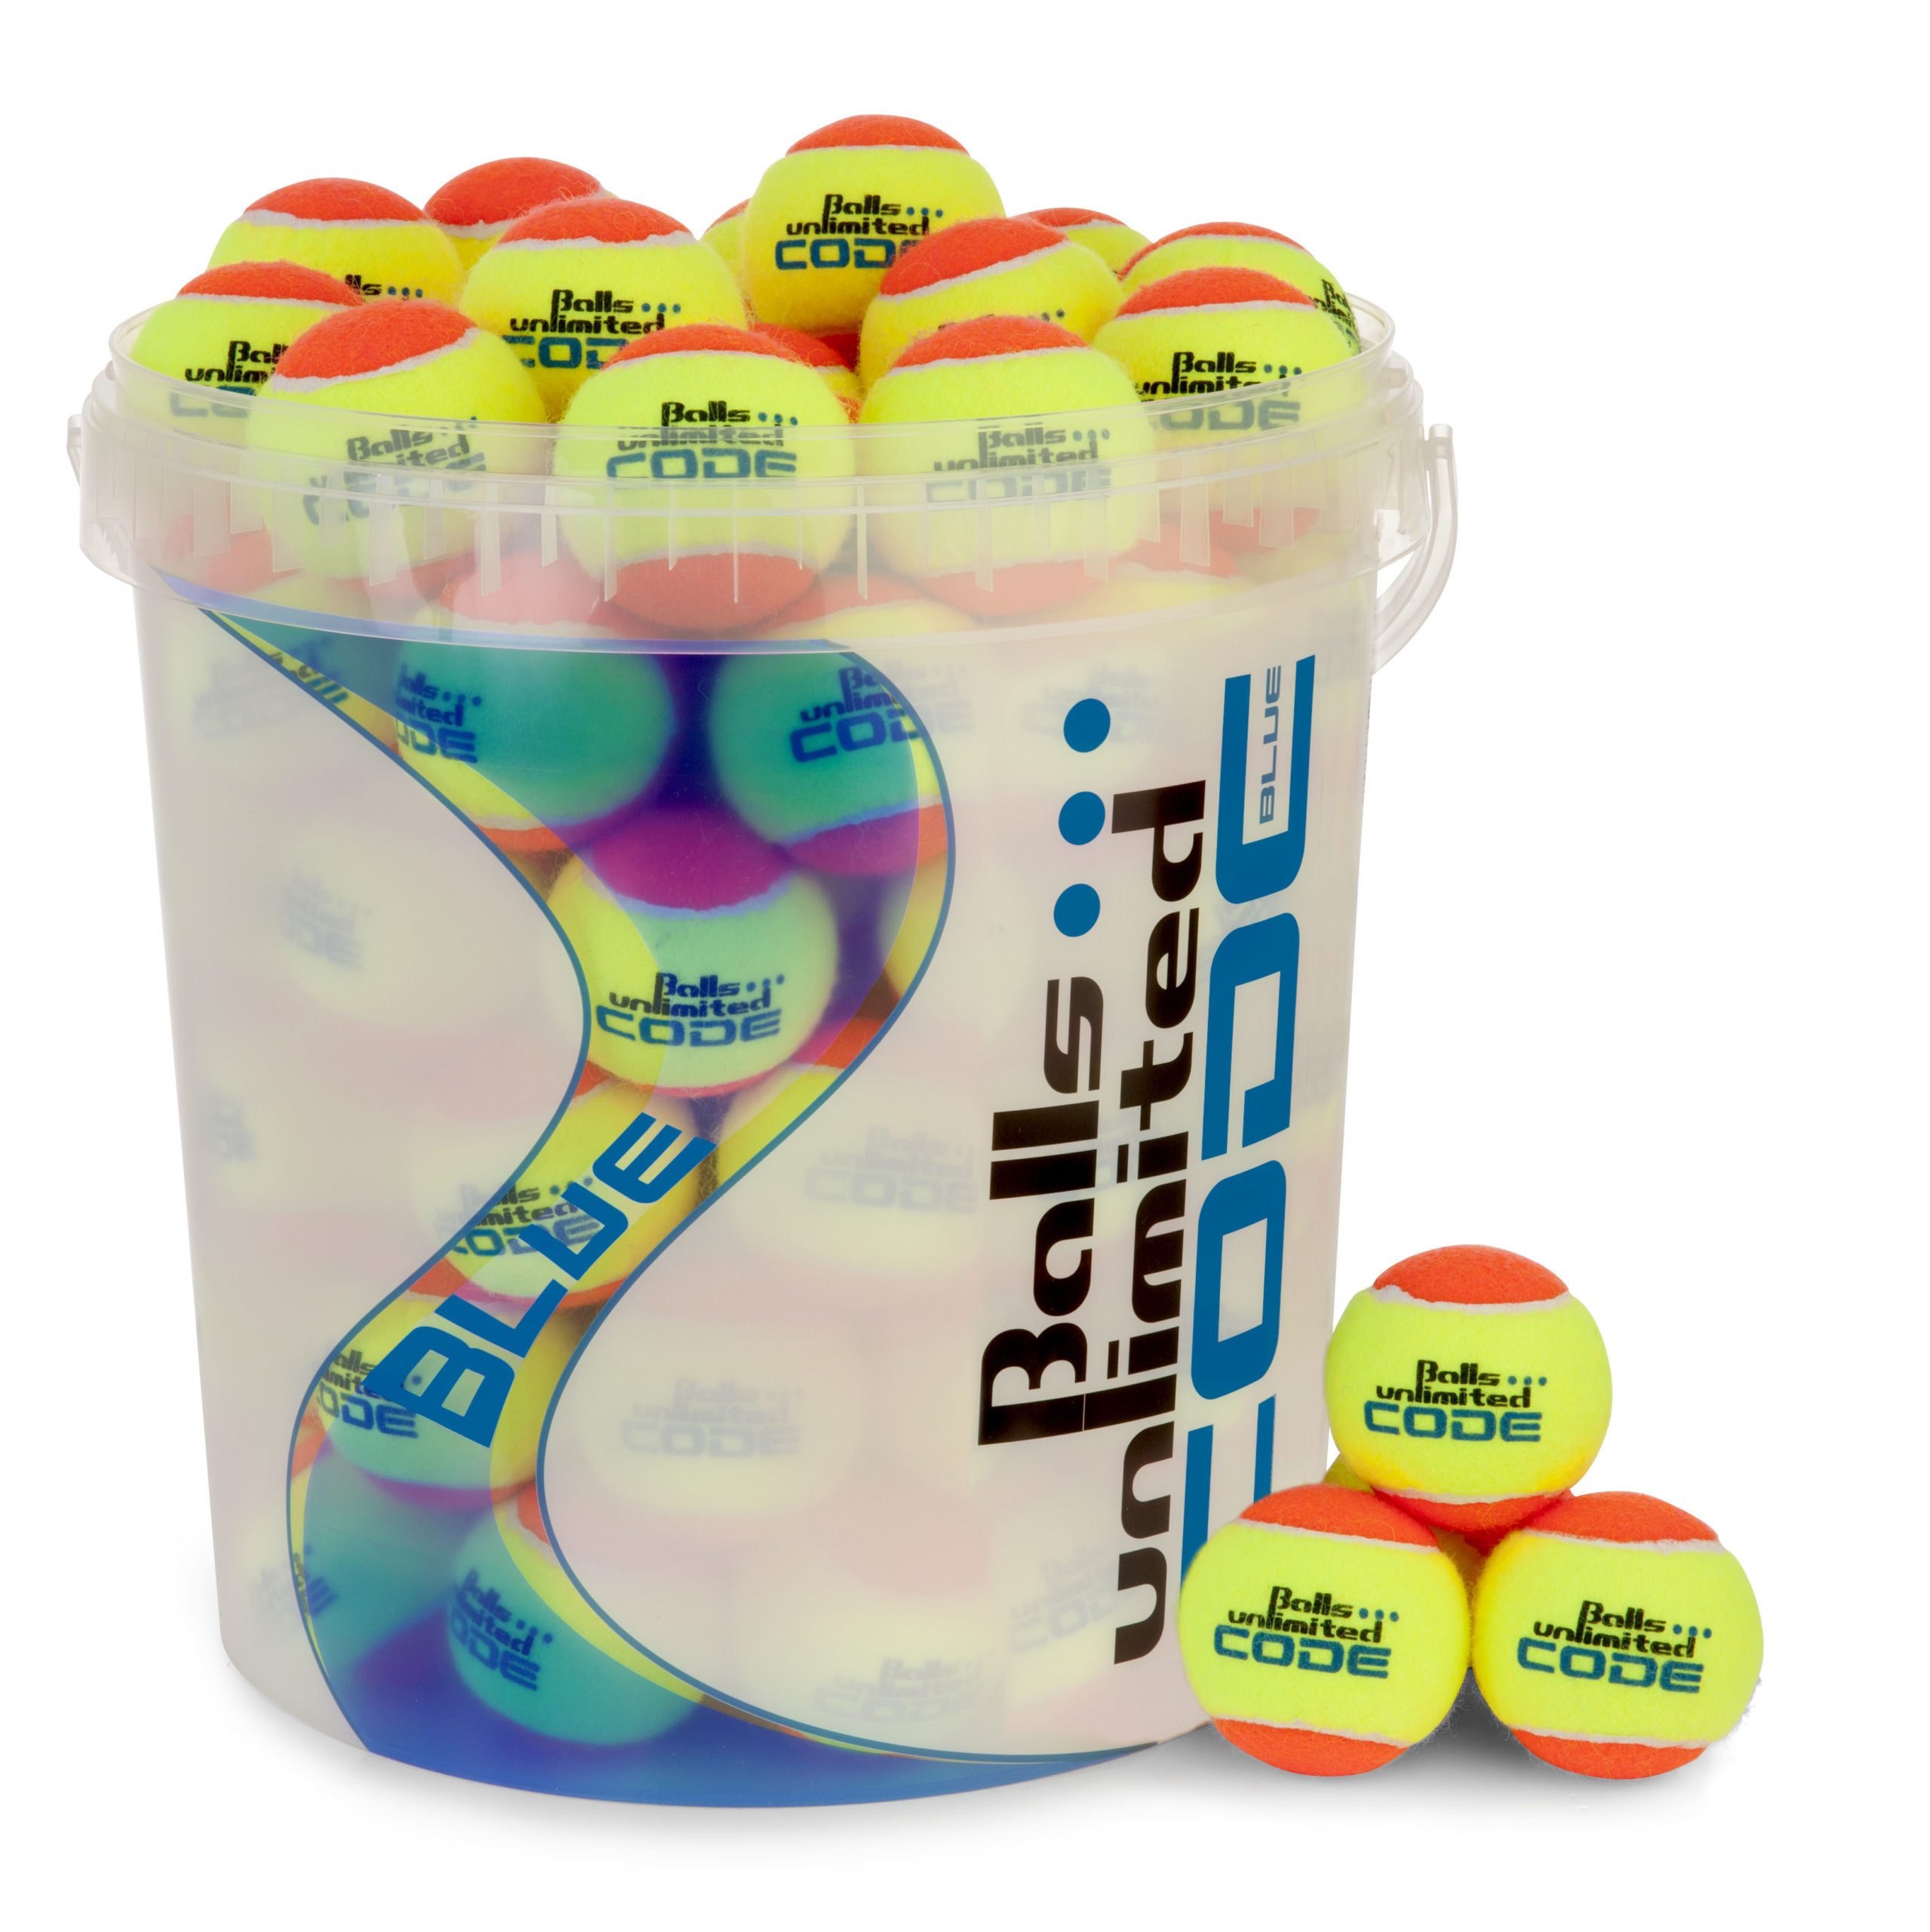 Balleimer Balls Unlimited Code Blue Gelb/Orange-0